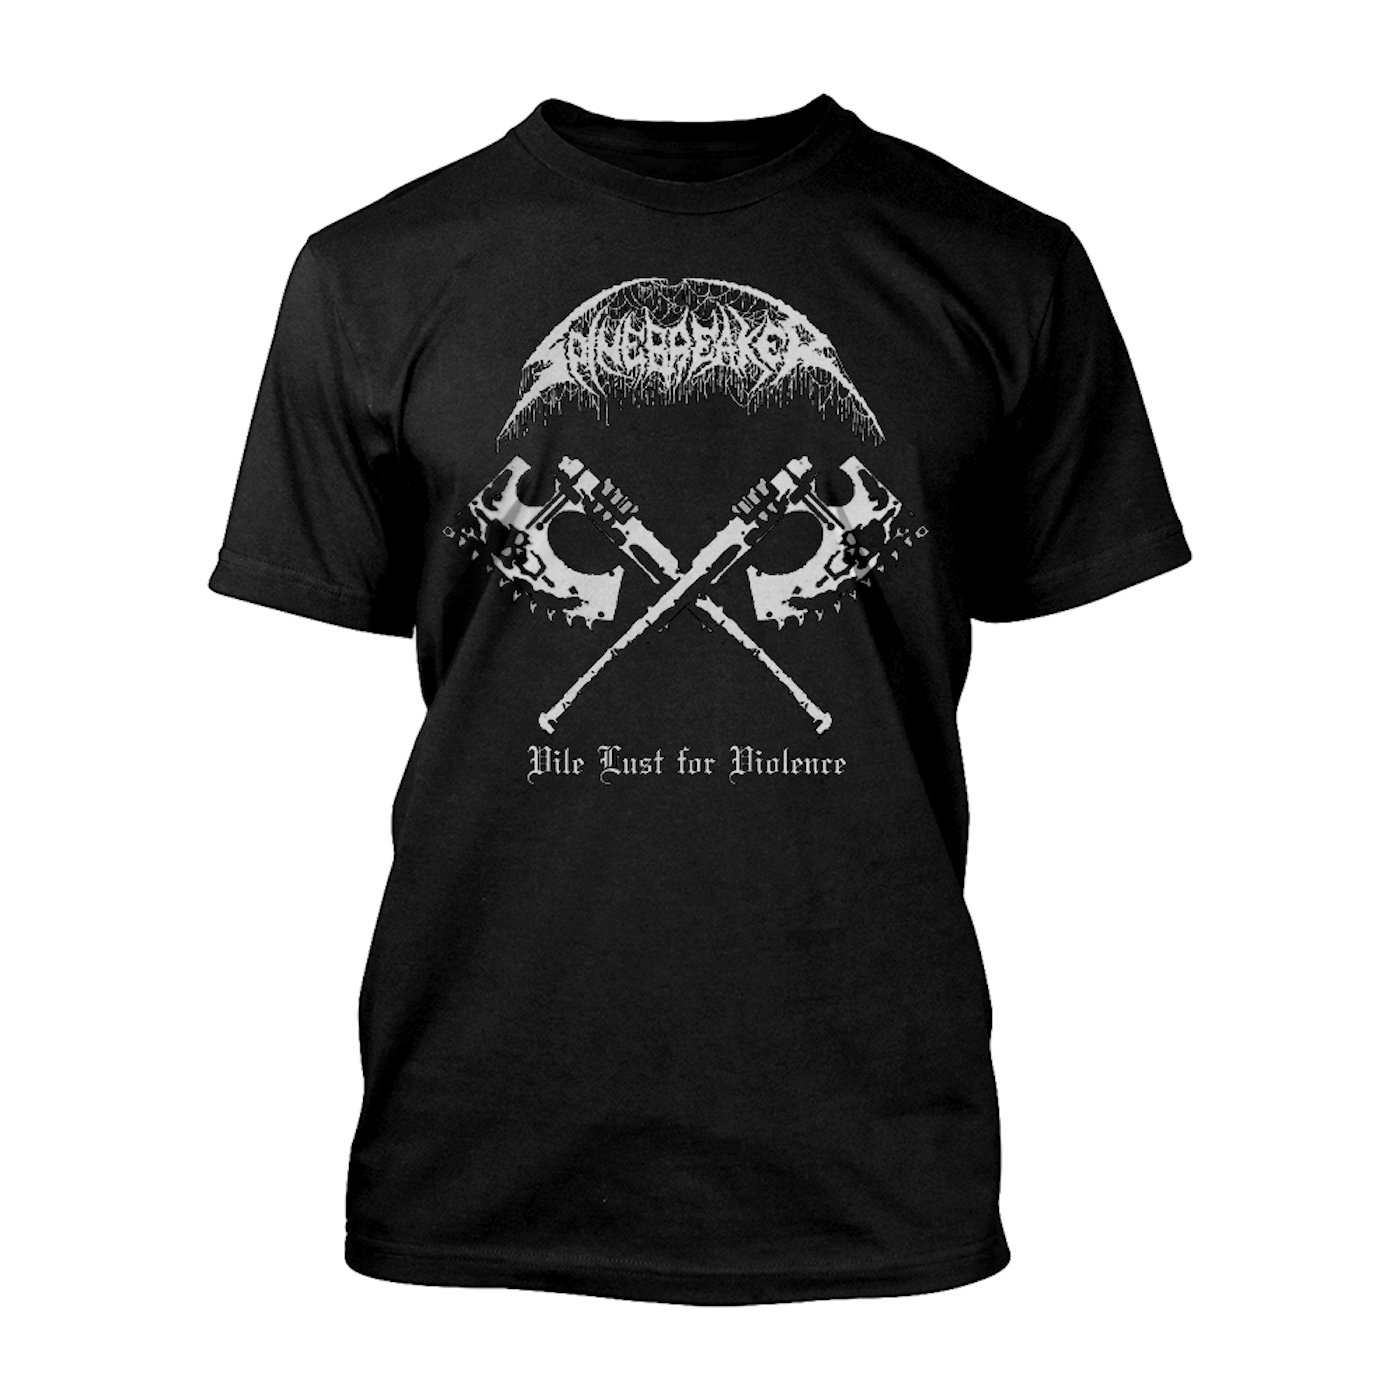 PREORDER:  Spinebreaker "Vile Lust for Violence" T-Shirt